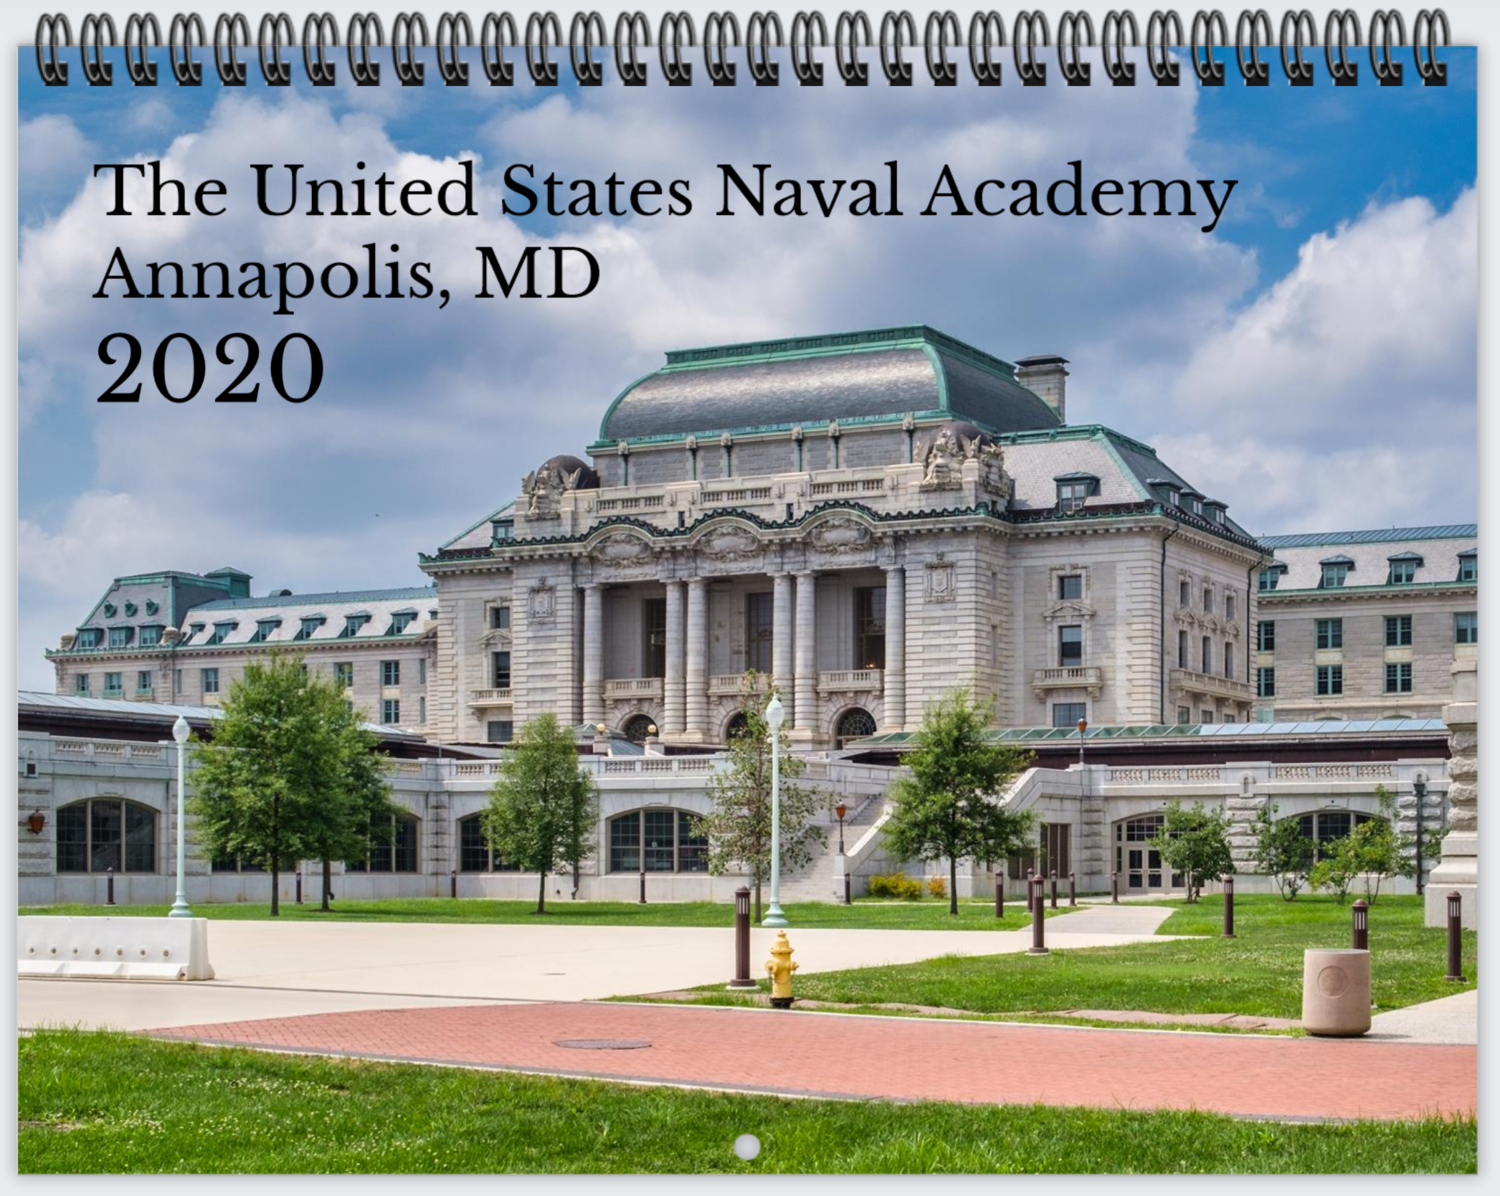 2020 Naval Academy Calendar